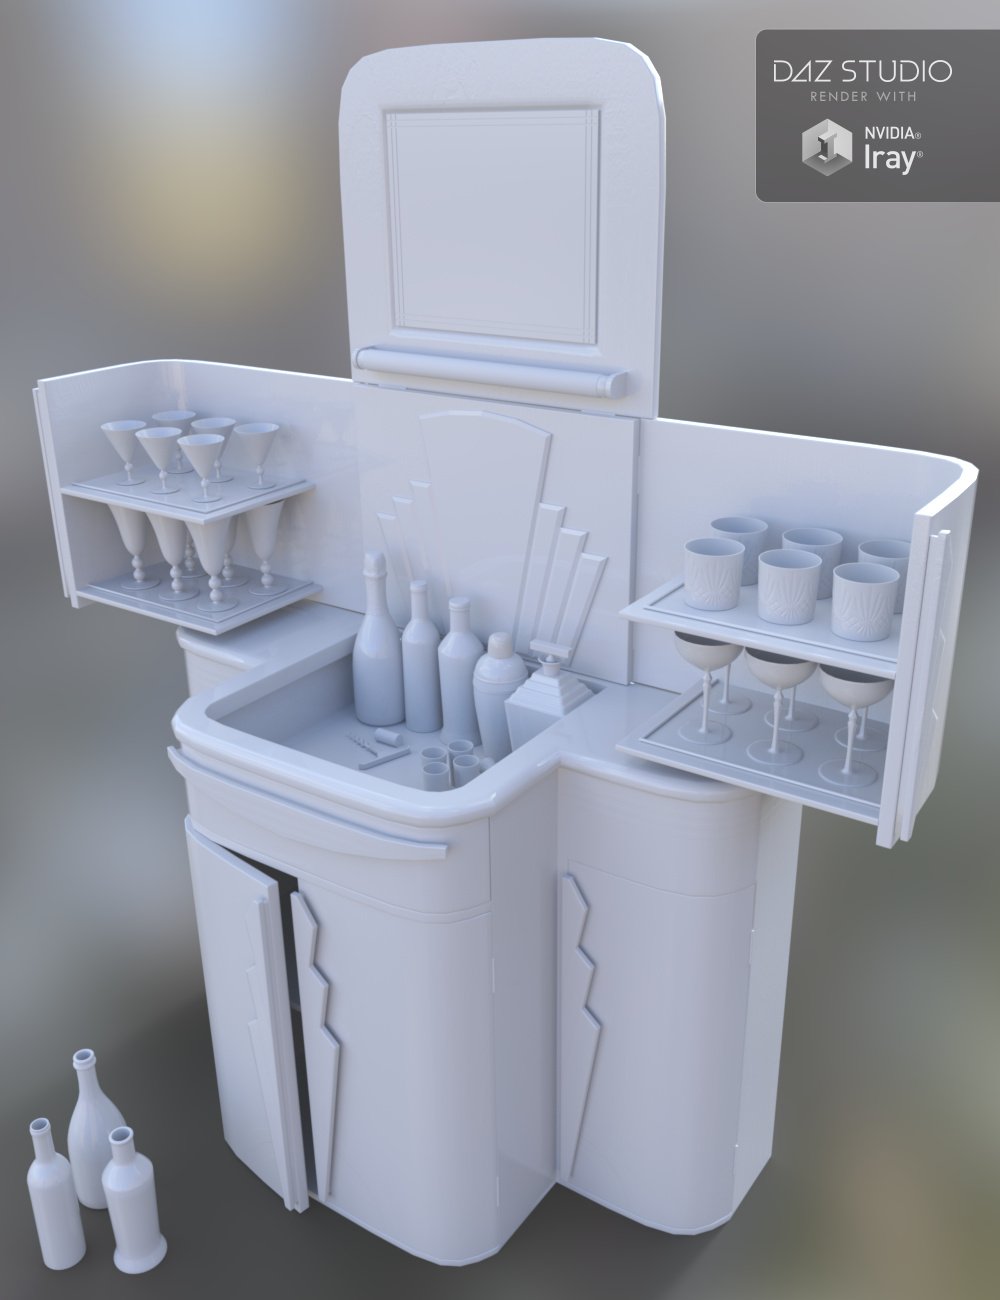 Art Deco Cabinet by: Merlin Studios, 3D Models by Daz 3D